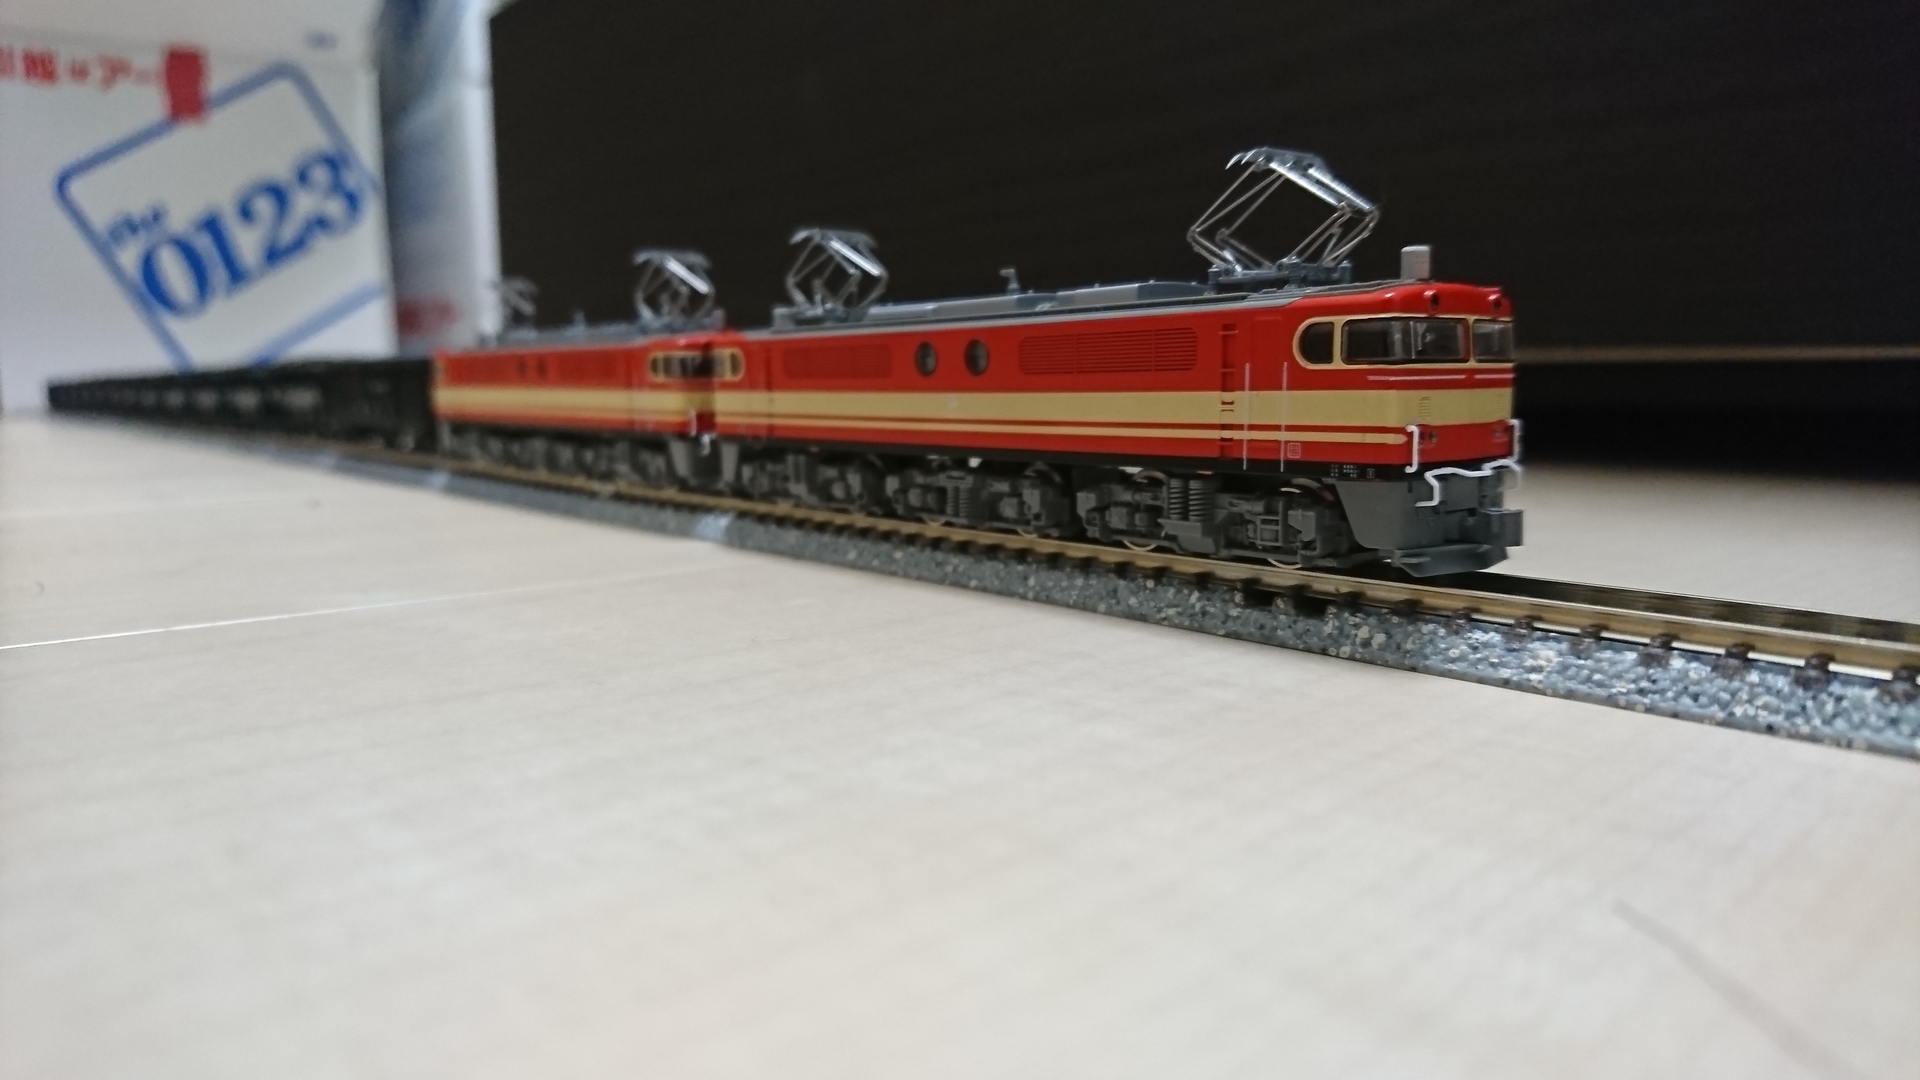 KATO 西武　E851 セメント列車